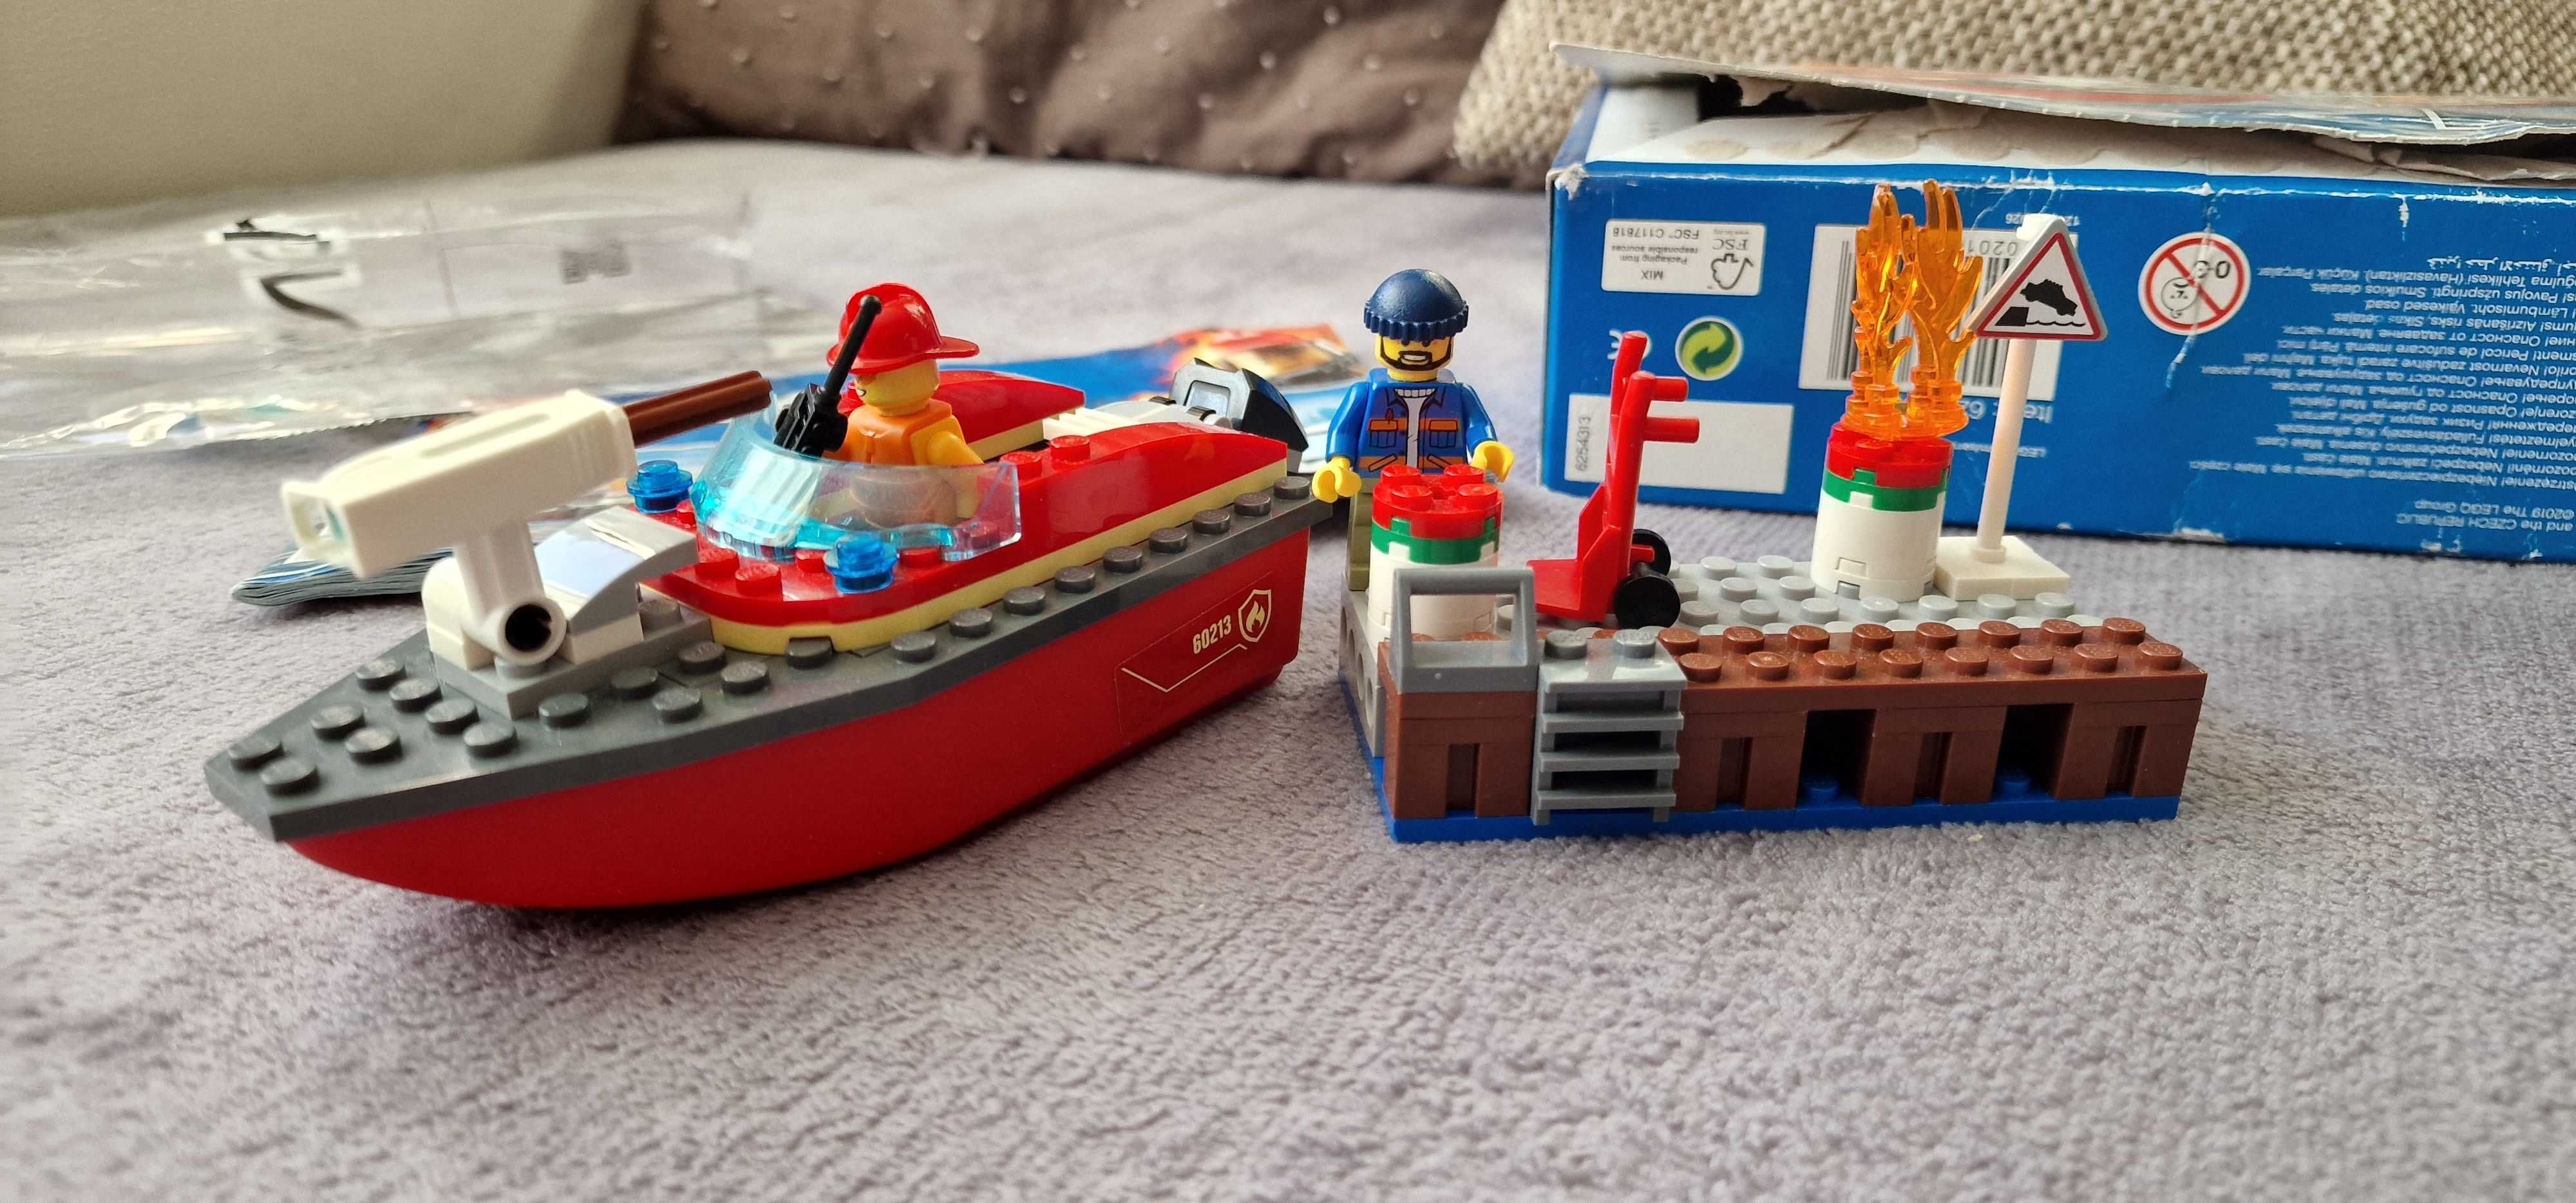 LEGO City 60213 - Dock Side Fire